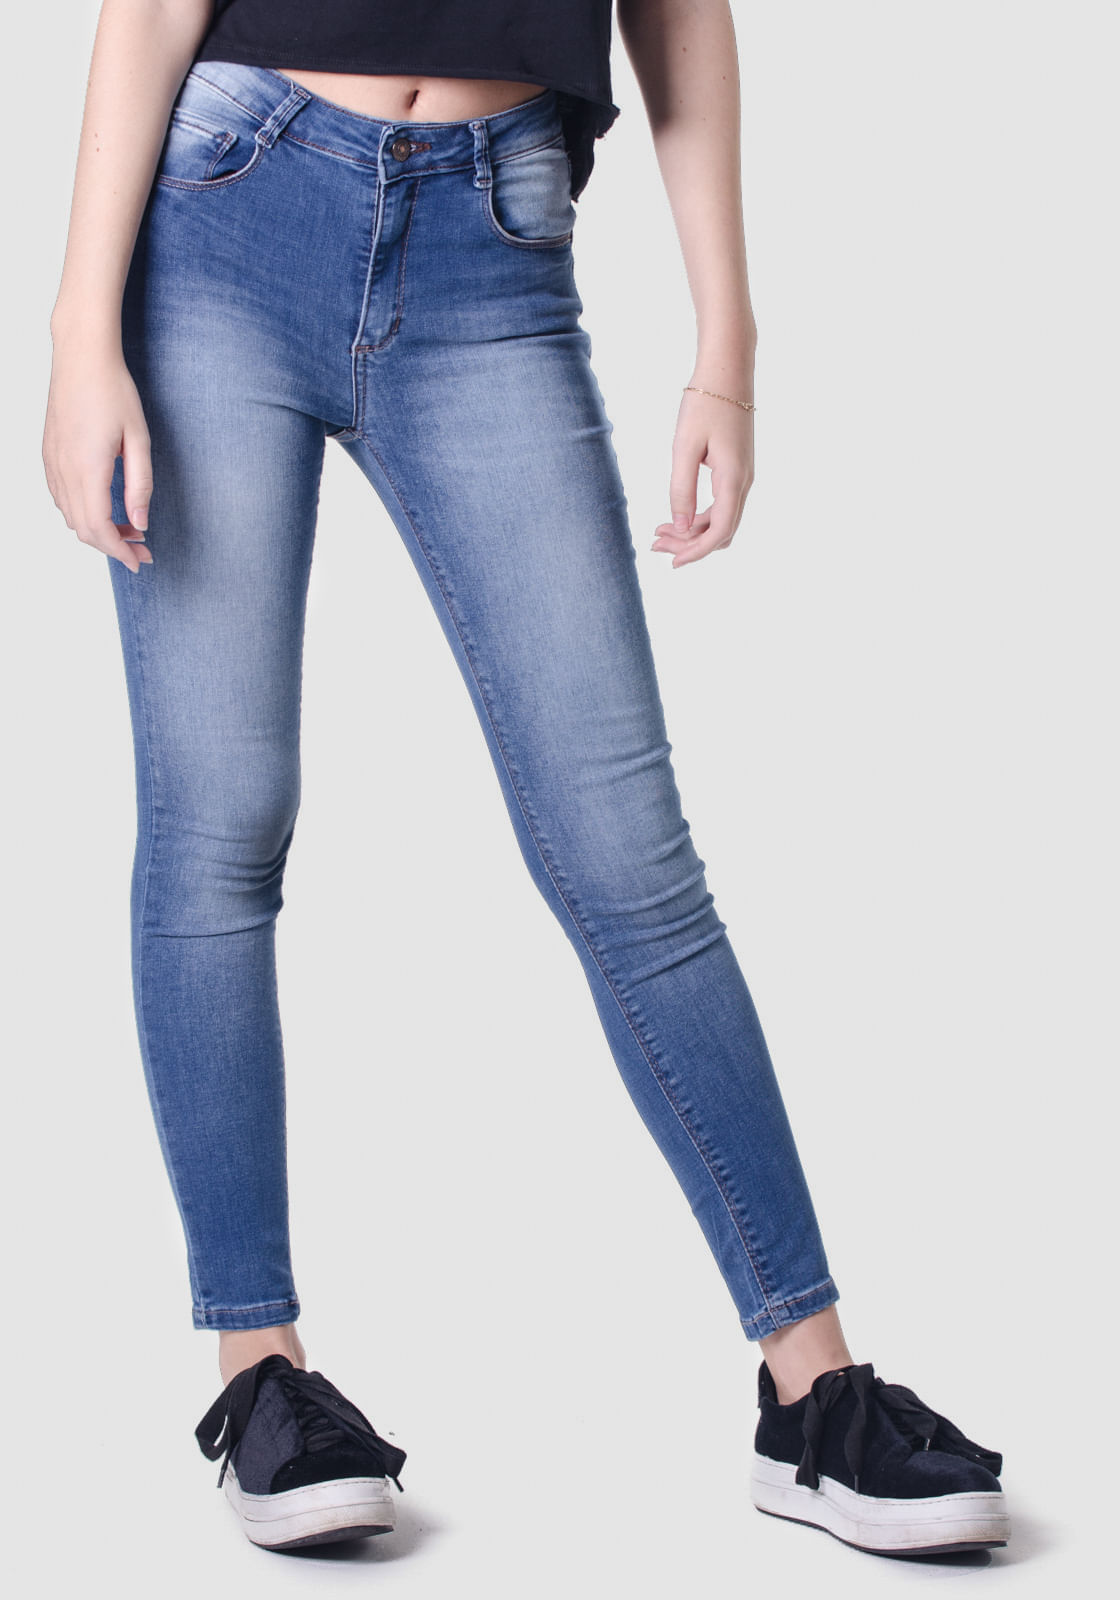 calça jeans cintura media